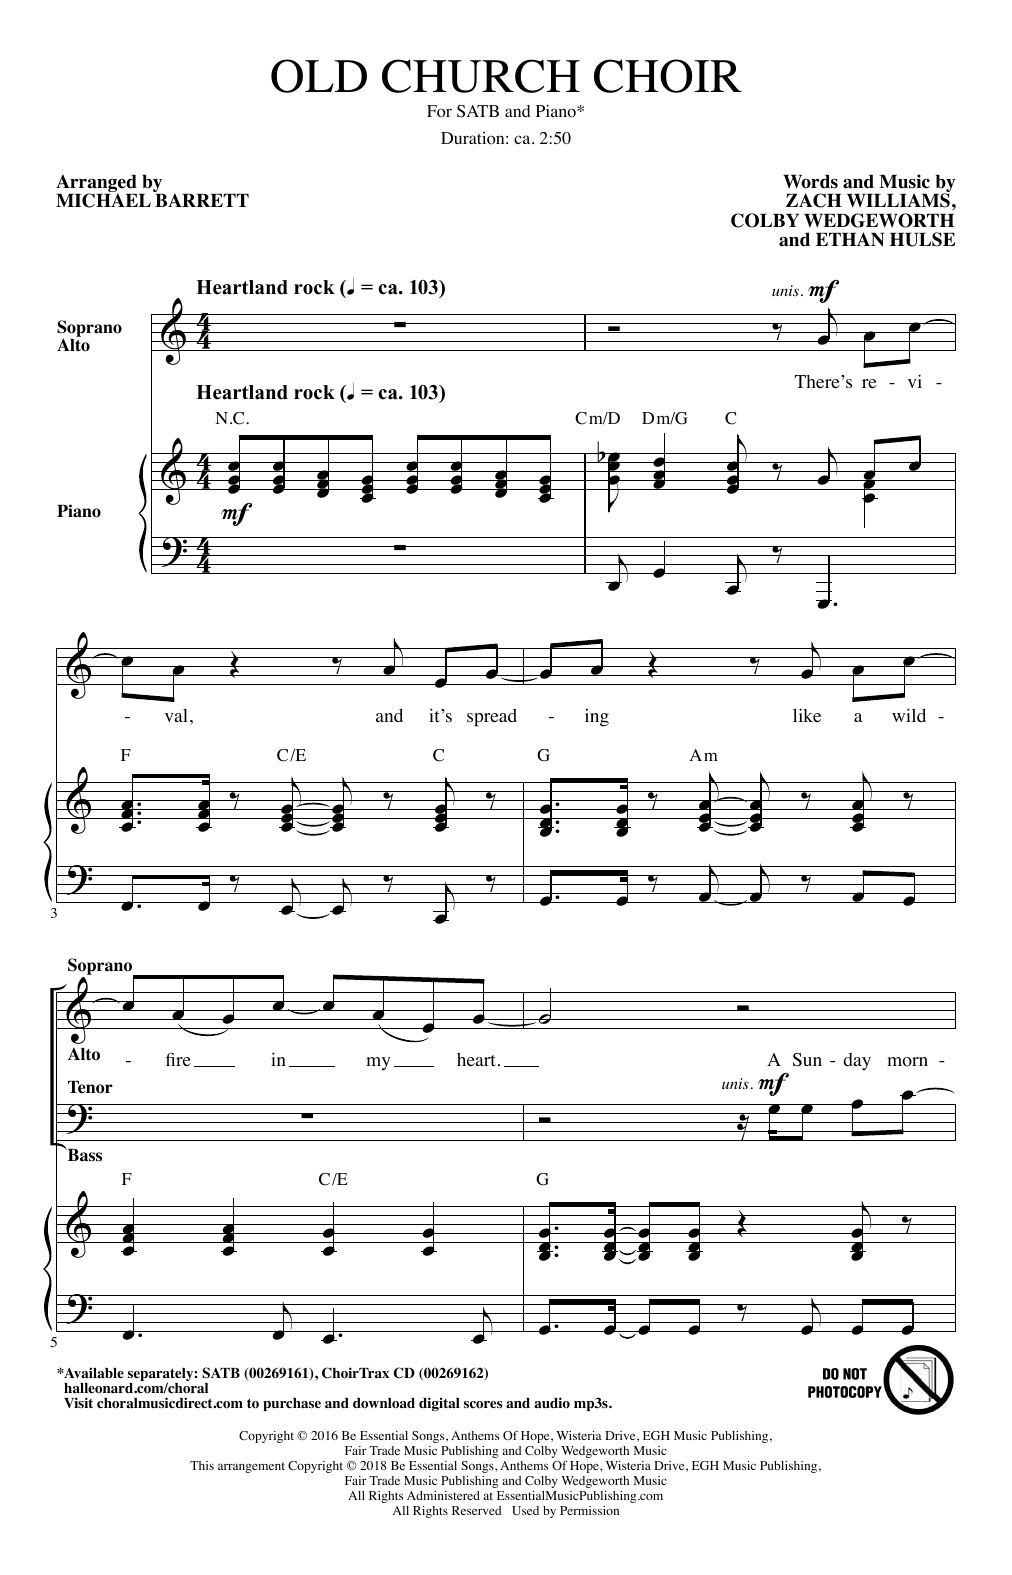 Old Church Choir (arr. Michael Barrett) (SATB Choir) von Zach Williams